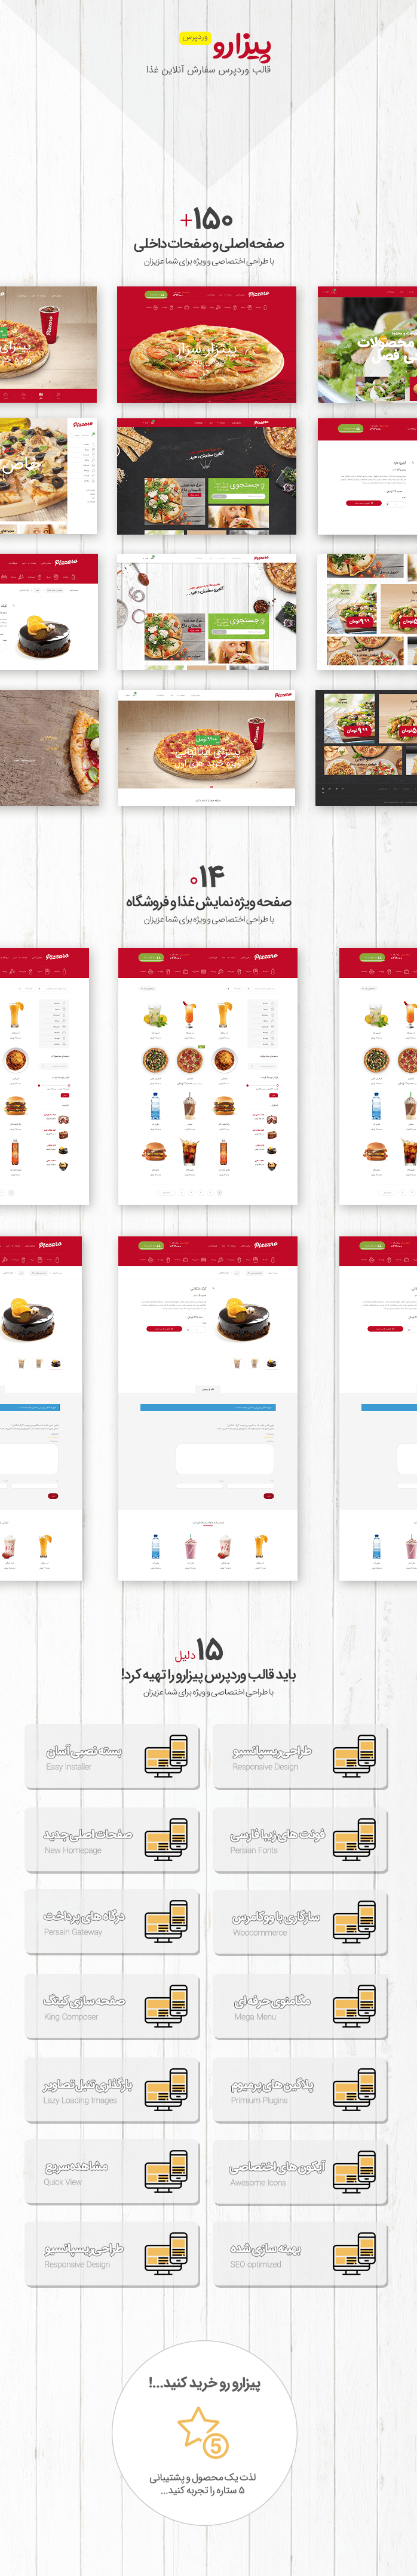 قالب Pizzaro قالب وردپرس سفارش آنلاین غذا | نسخه اورجینال + راهنمای قالب